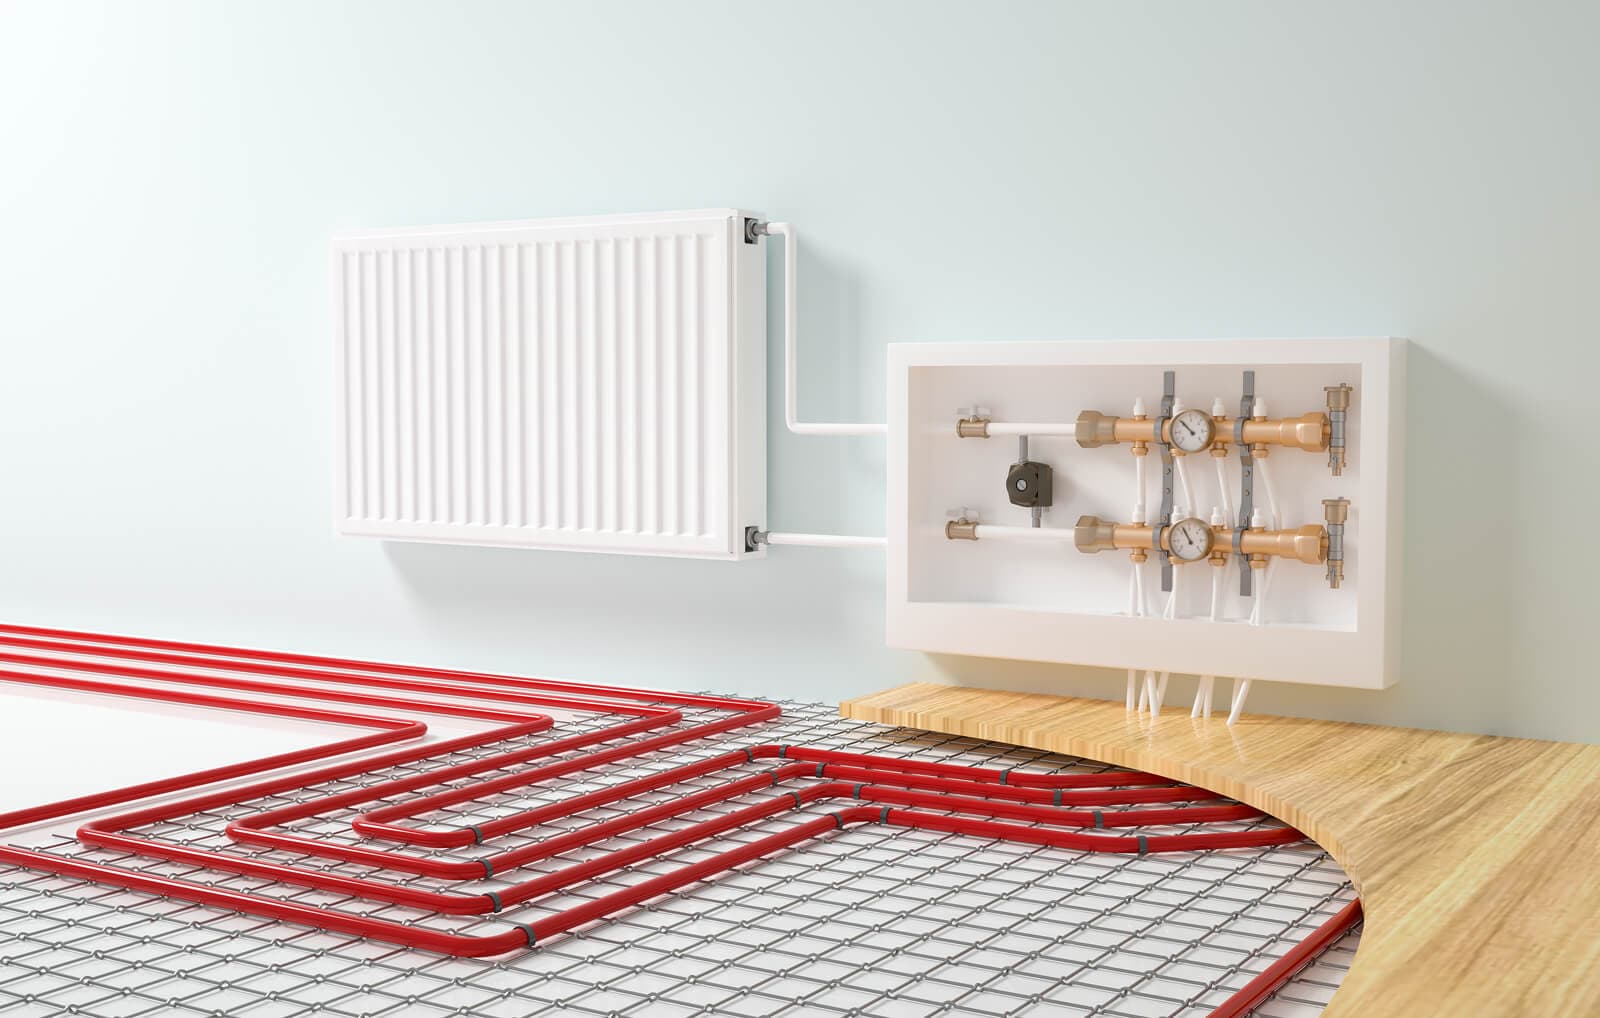 Instalación y mantenimiento de sistemas de calefacción